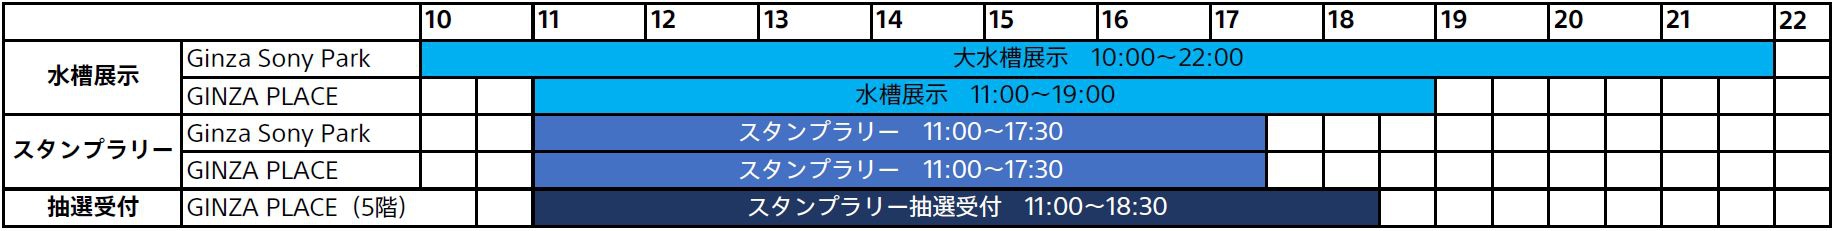 大水槽展示 10:00〜22:00（Ginza Sony Park） / 水槽展示 11:00〜19:00 （GINZA PLACE） / スタンプラリー 11:00〜17:30 (Ginza Sony Park、GINZA PLACE) / スタンプラリー抽選受付 (GINZA PLACE 5階)